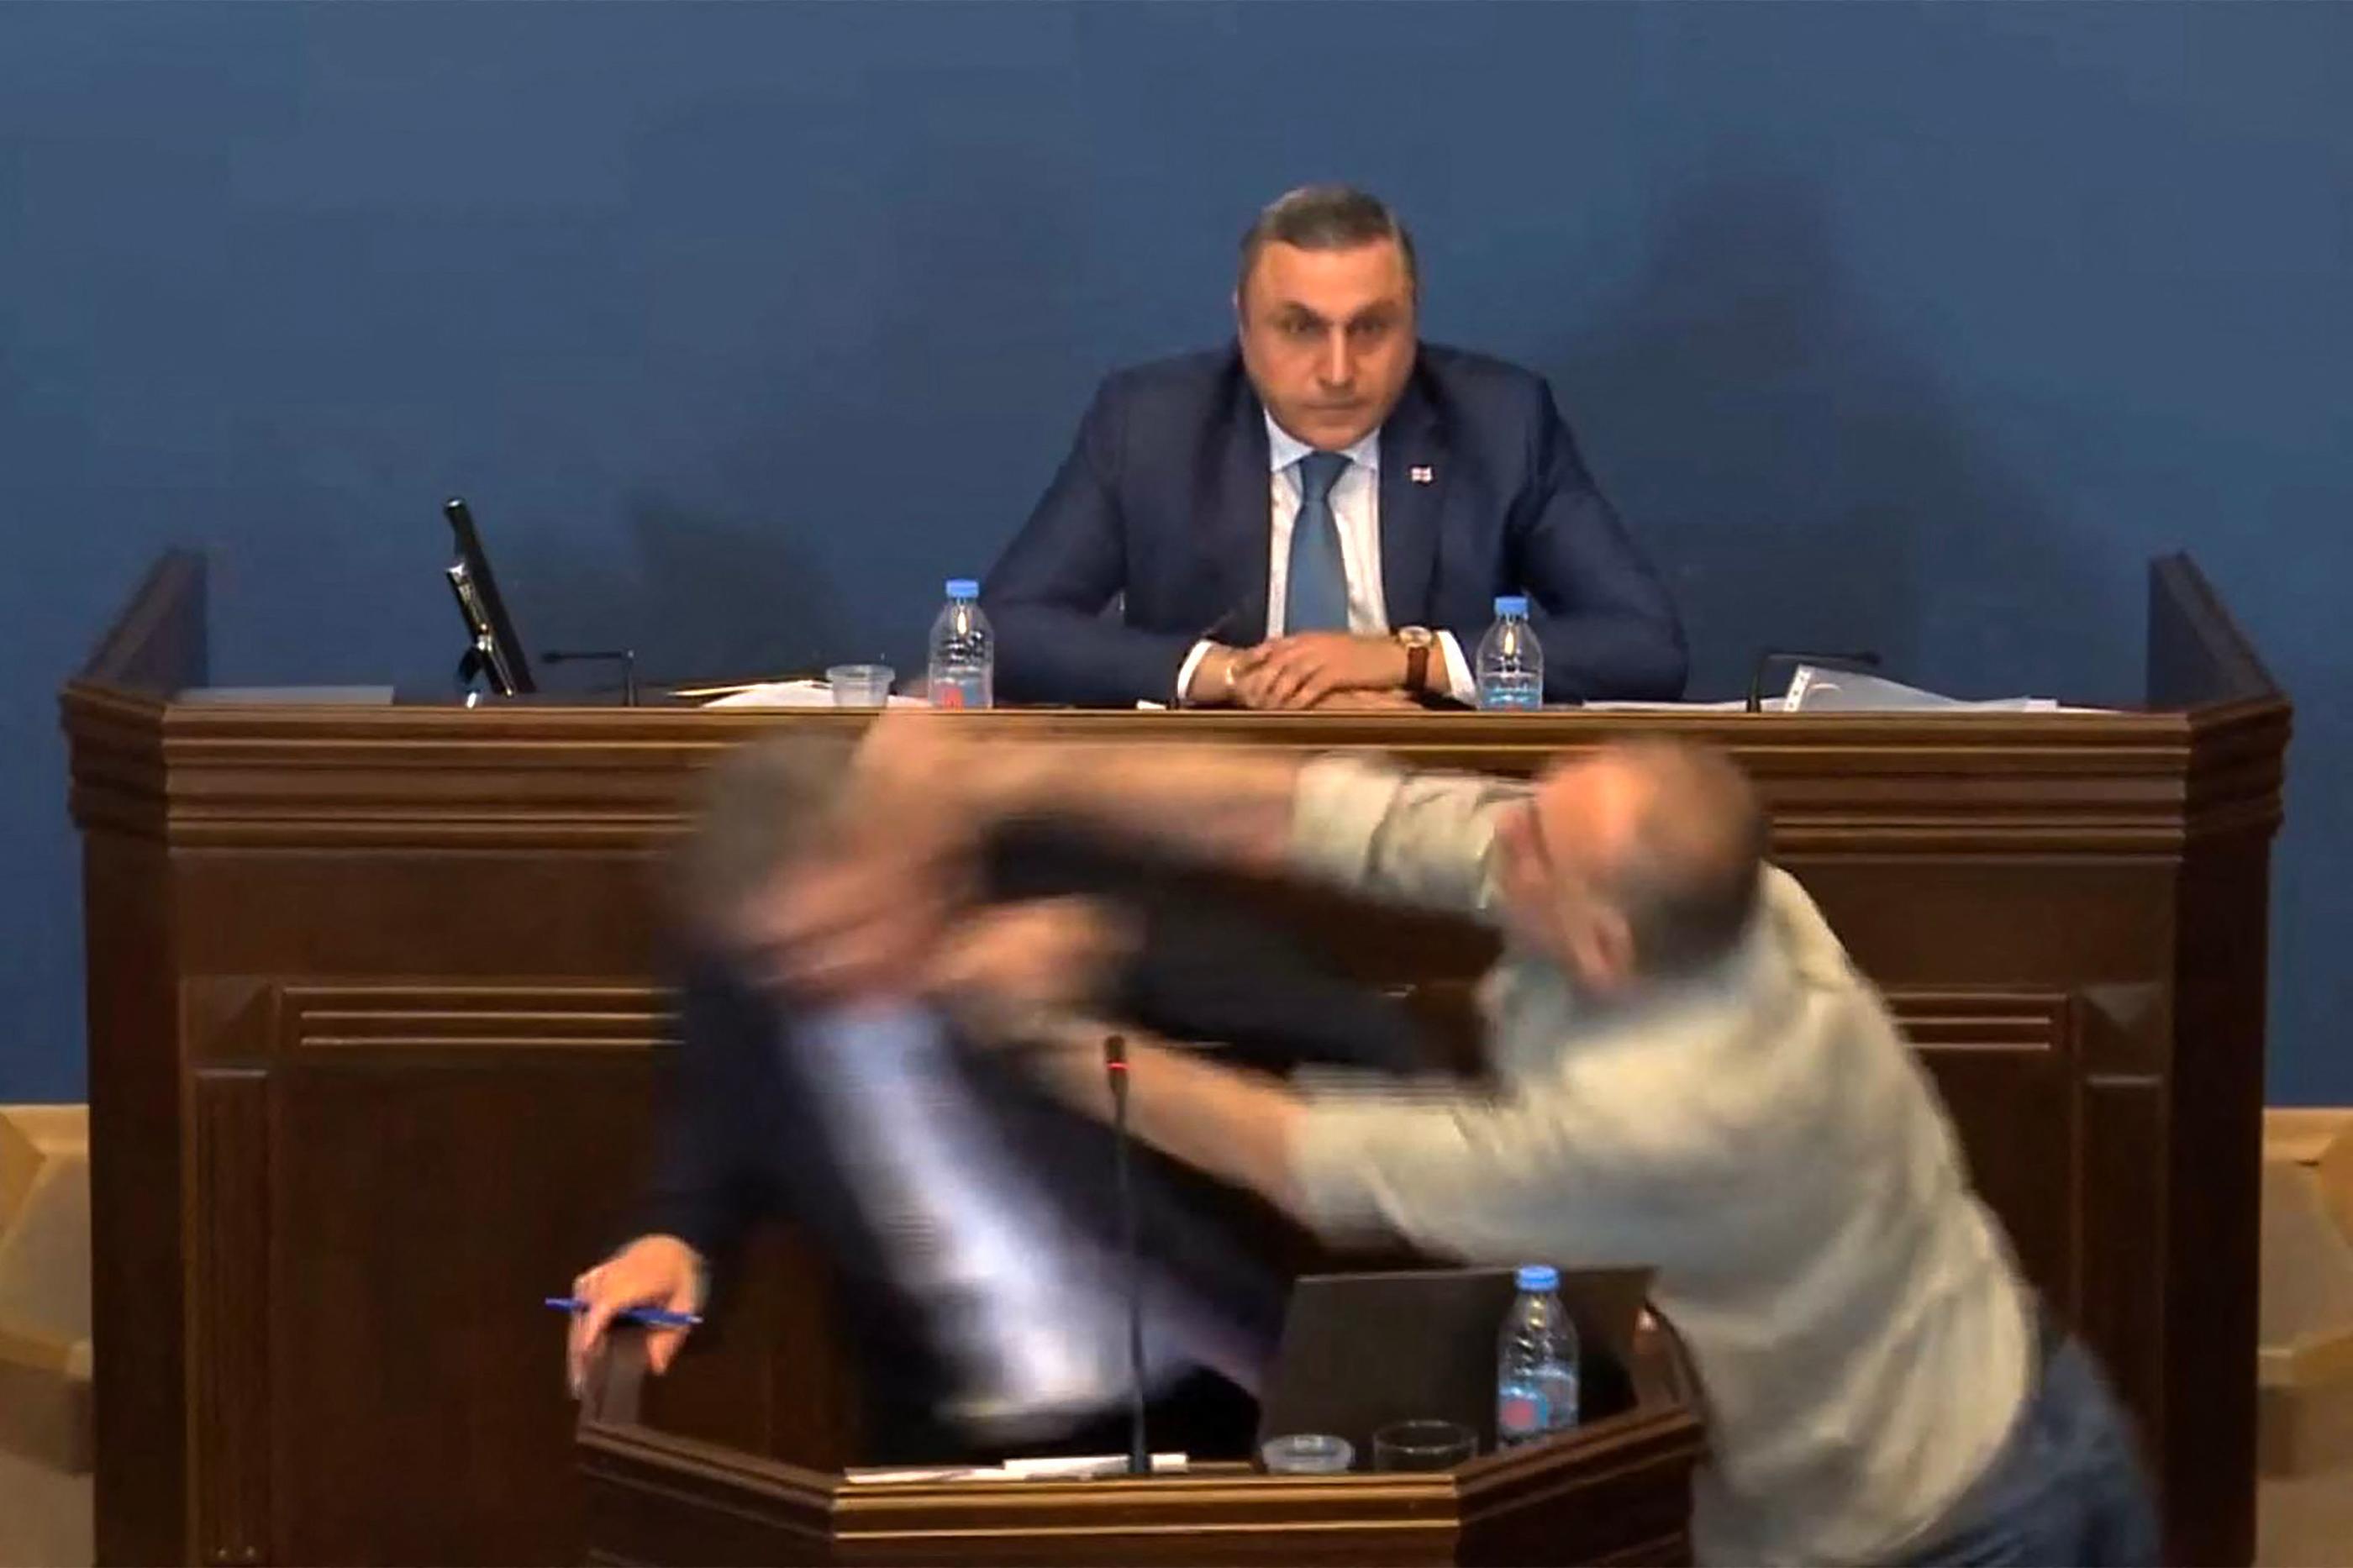 La stupeur a saisi le Parlement géorgien ce lundi quand un député de l'opposition s'en est pris à un collègue de la majorité, avant que la situation ne dégénère en cohue générale. AFP/Parlement de Georgia